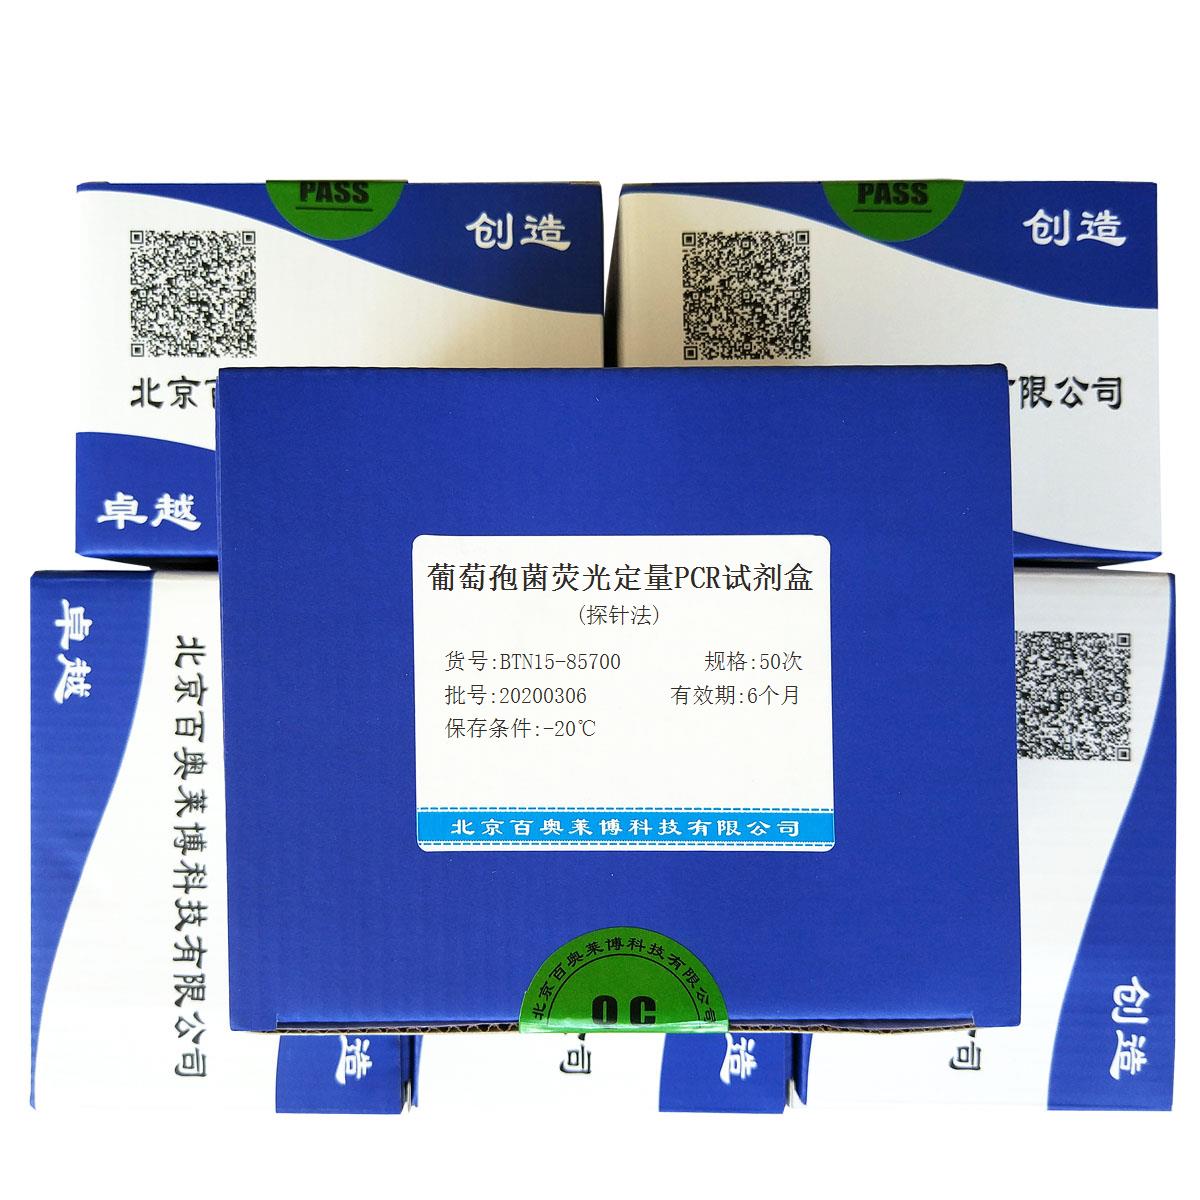 葡萄孢菌荧光定量PCR试剂盒(探针法)北京品牌